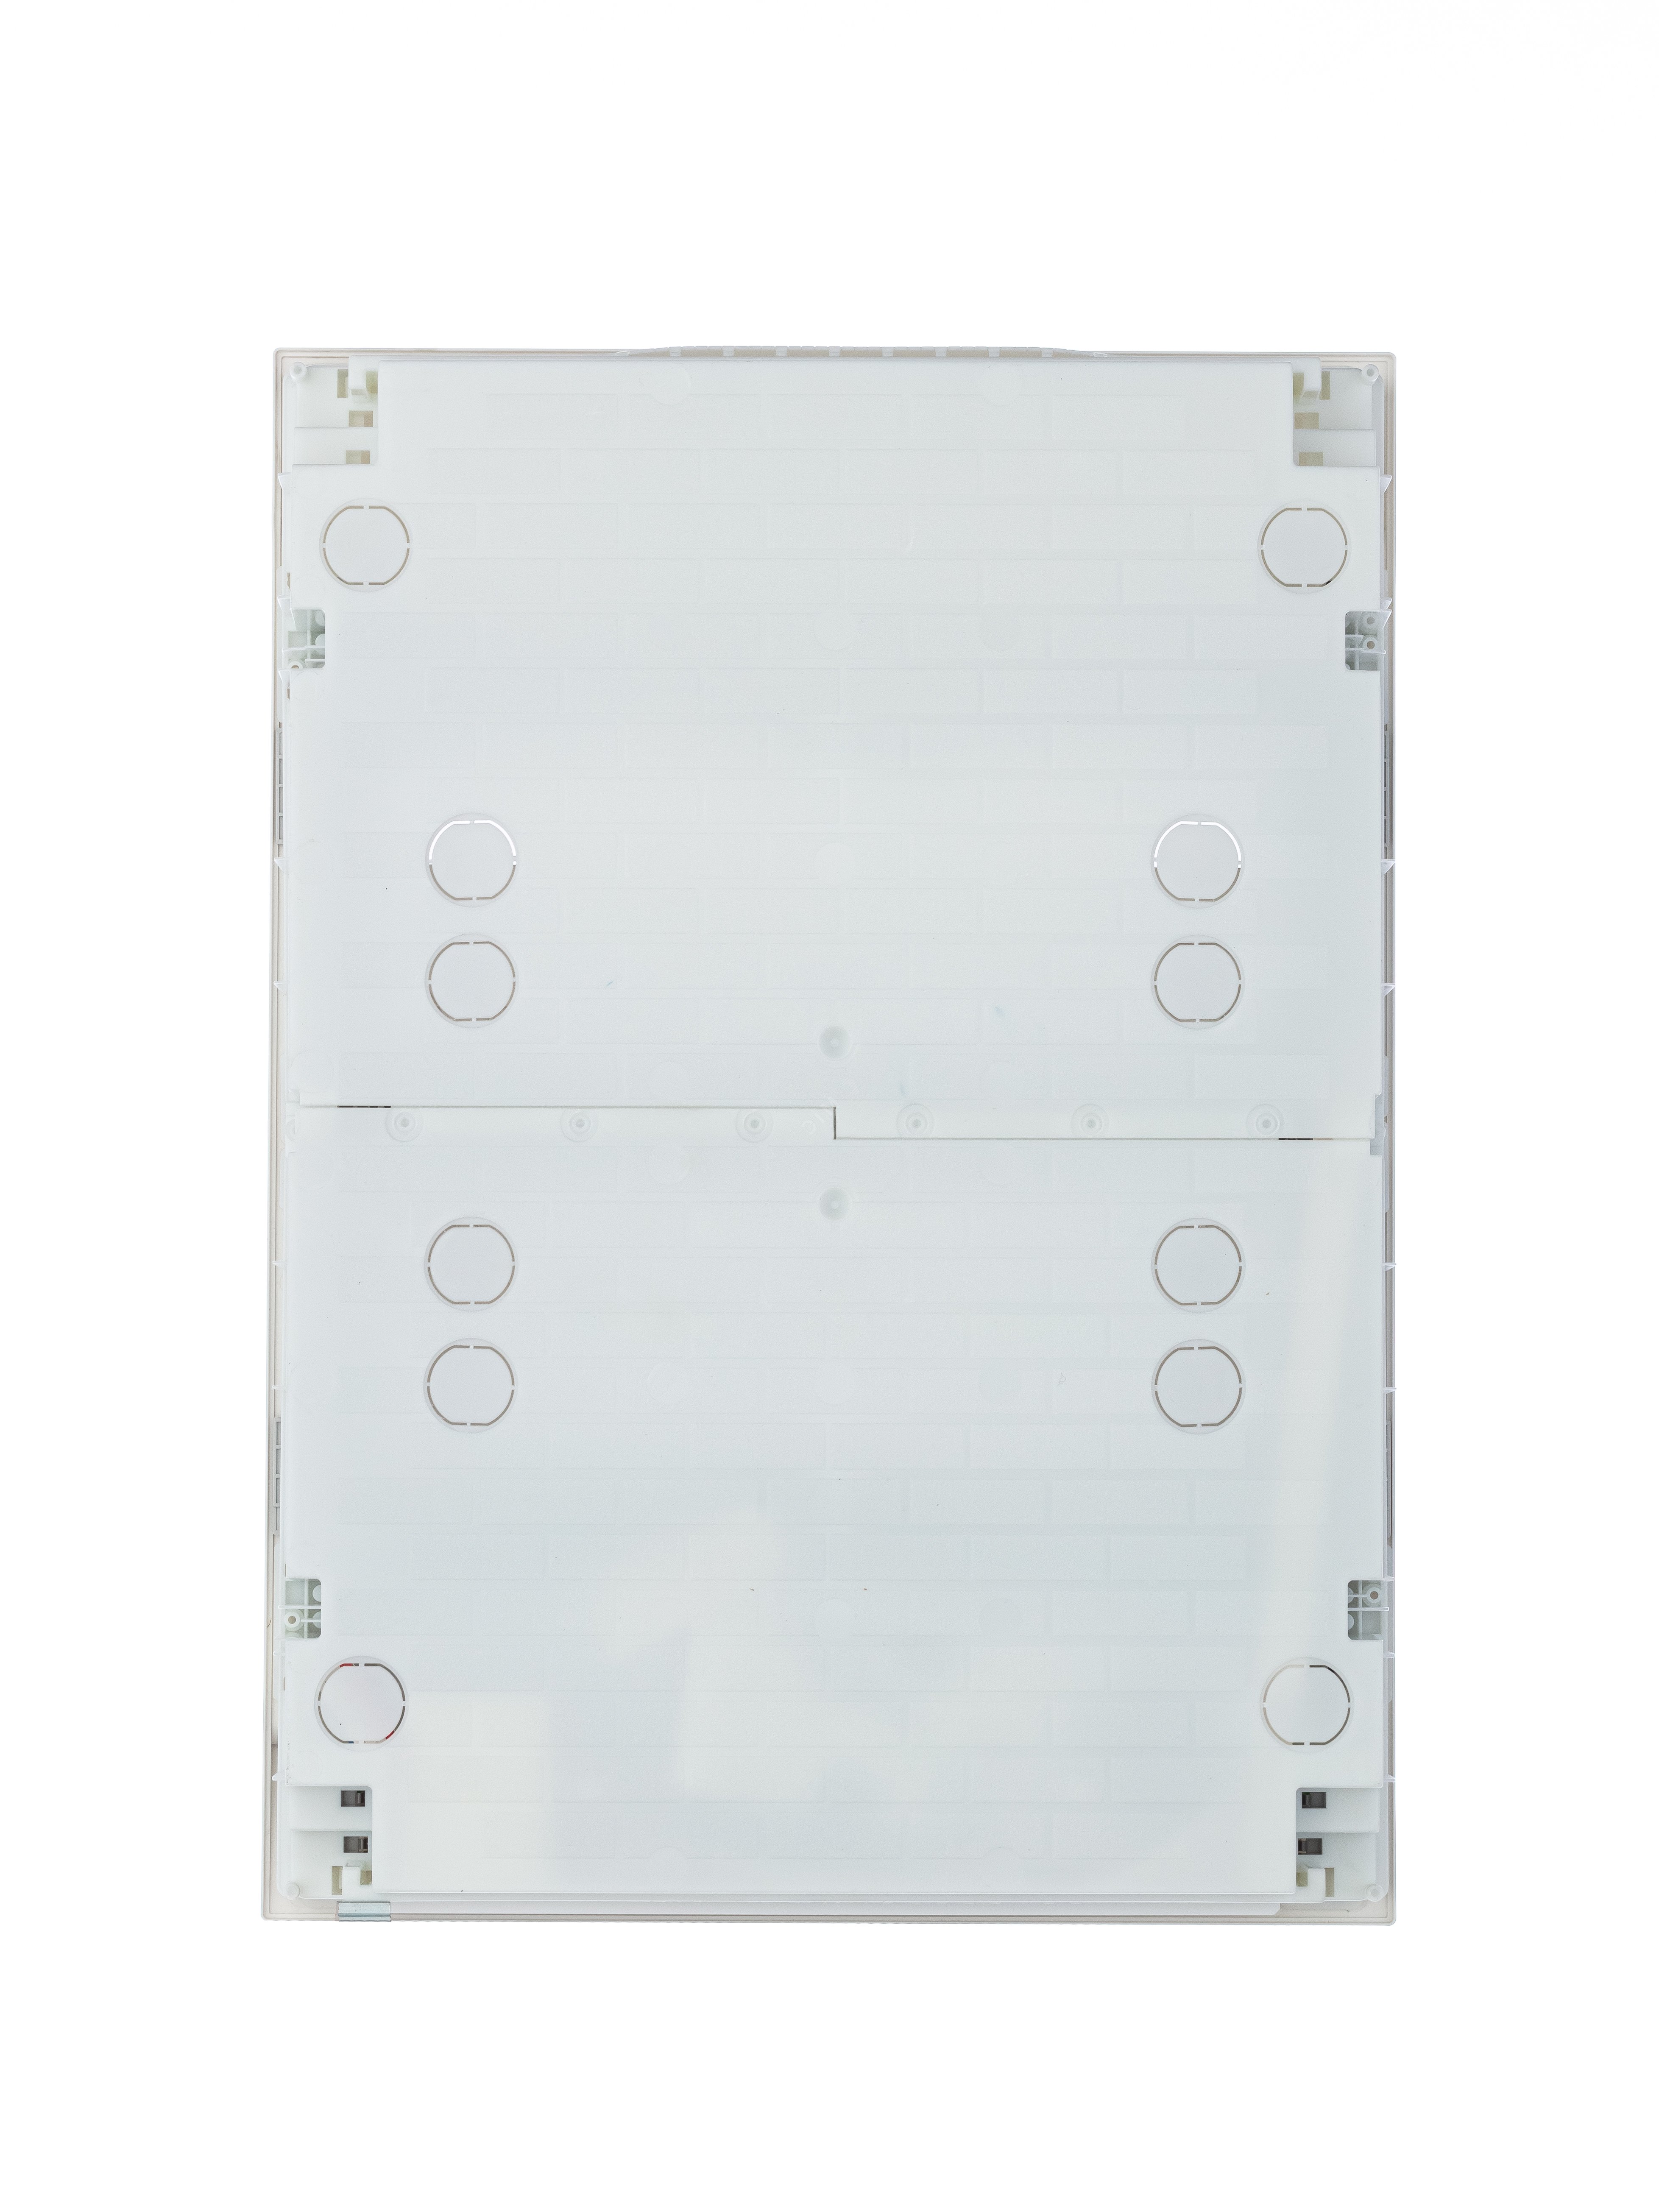 Щит распределительный встраиваемый ЩРв-п-54 пластиковый Mistral41 серая прозрачная дверь с клеммами IP41 (41A18X33B) 1SLM004101A2209 ABB - превью 6